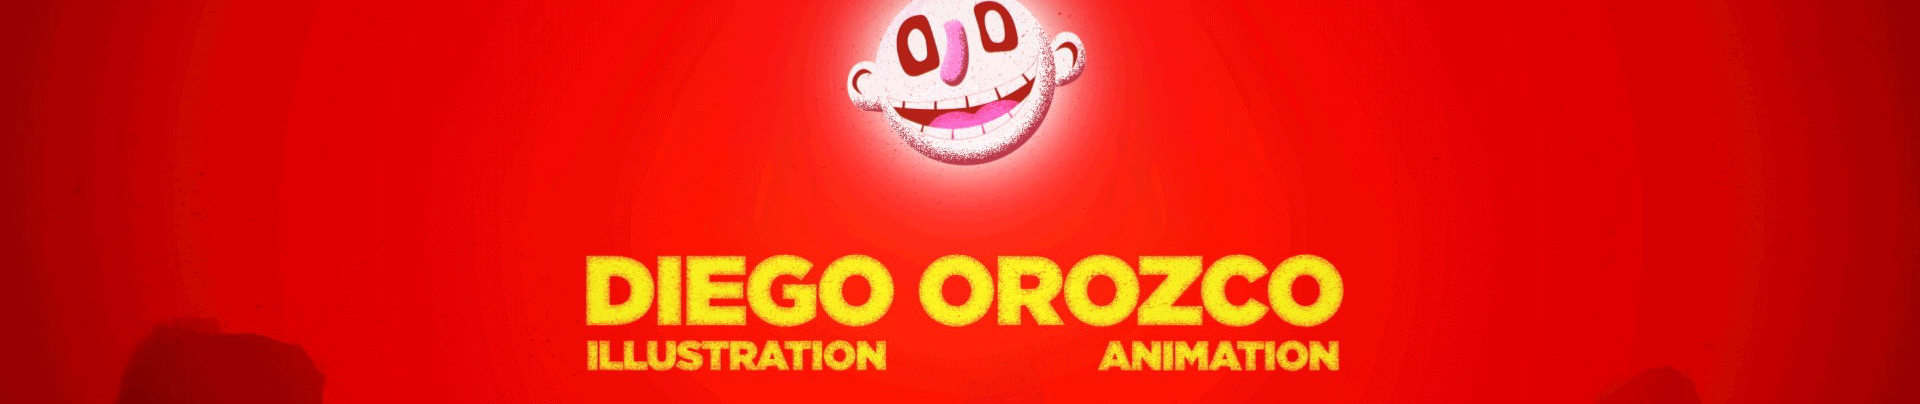 Banner de perfil de DIEGO OROZCO